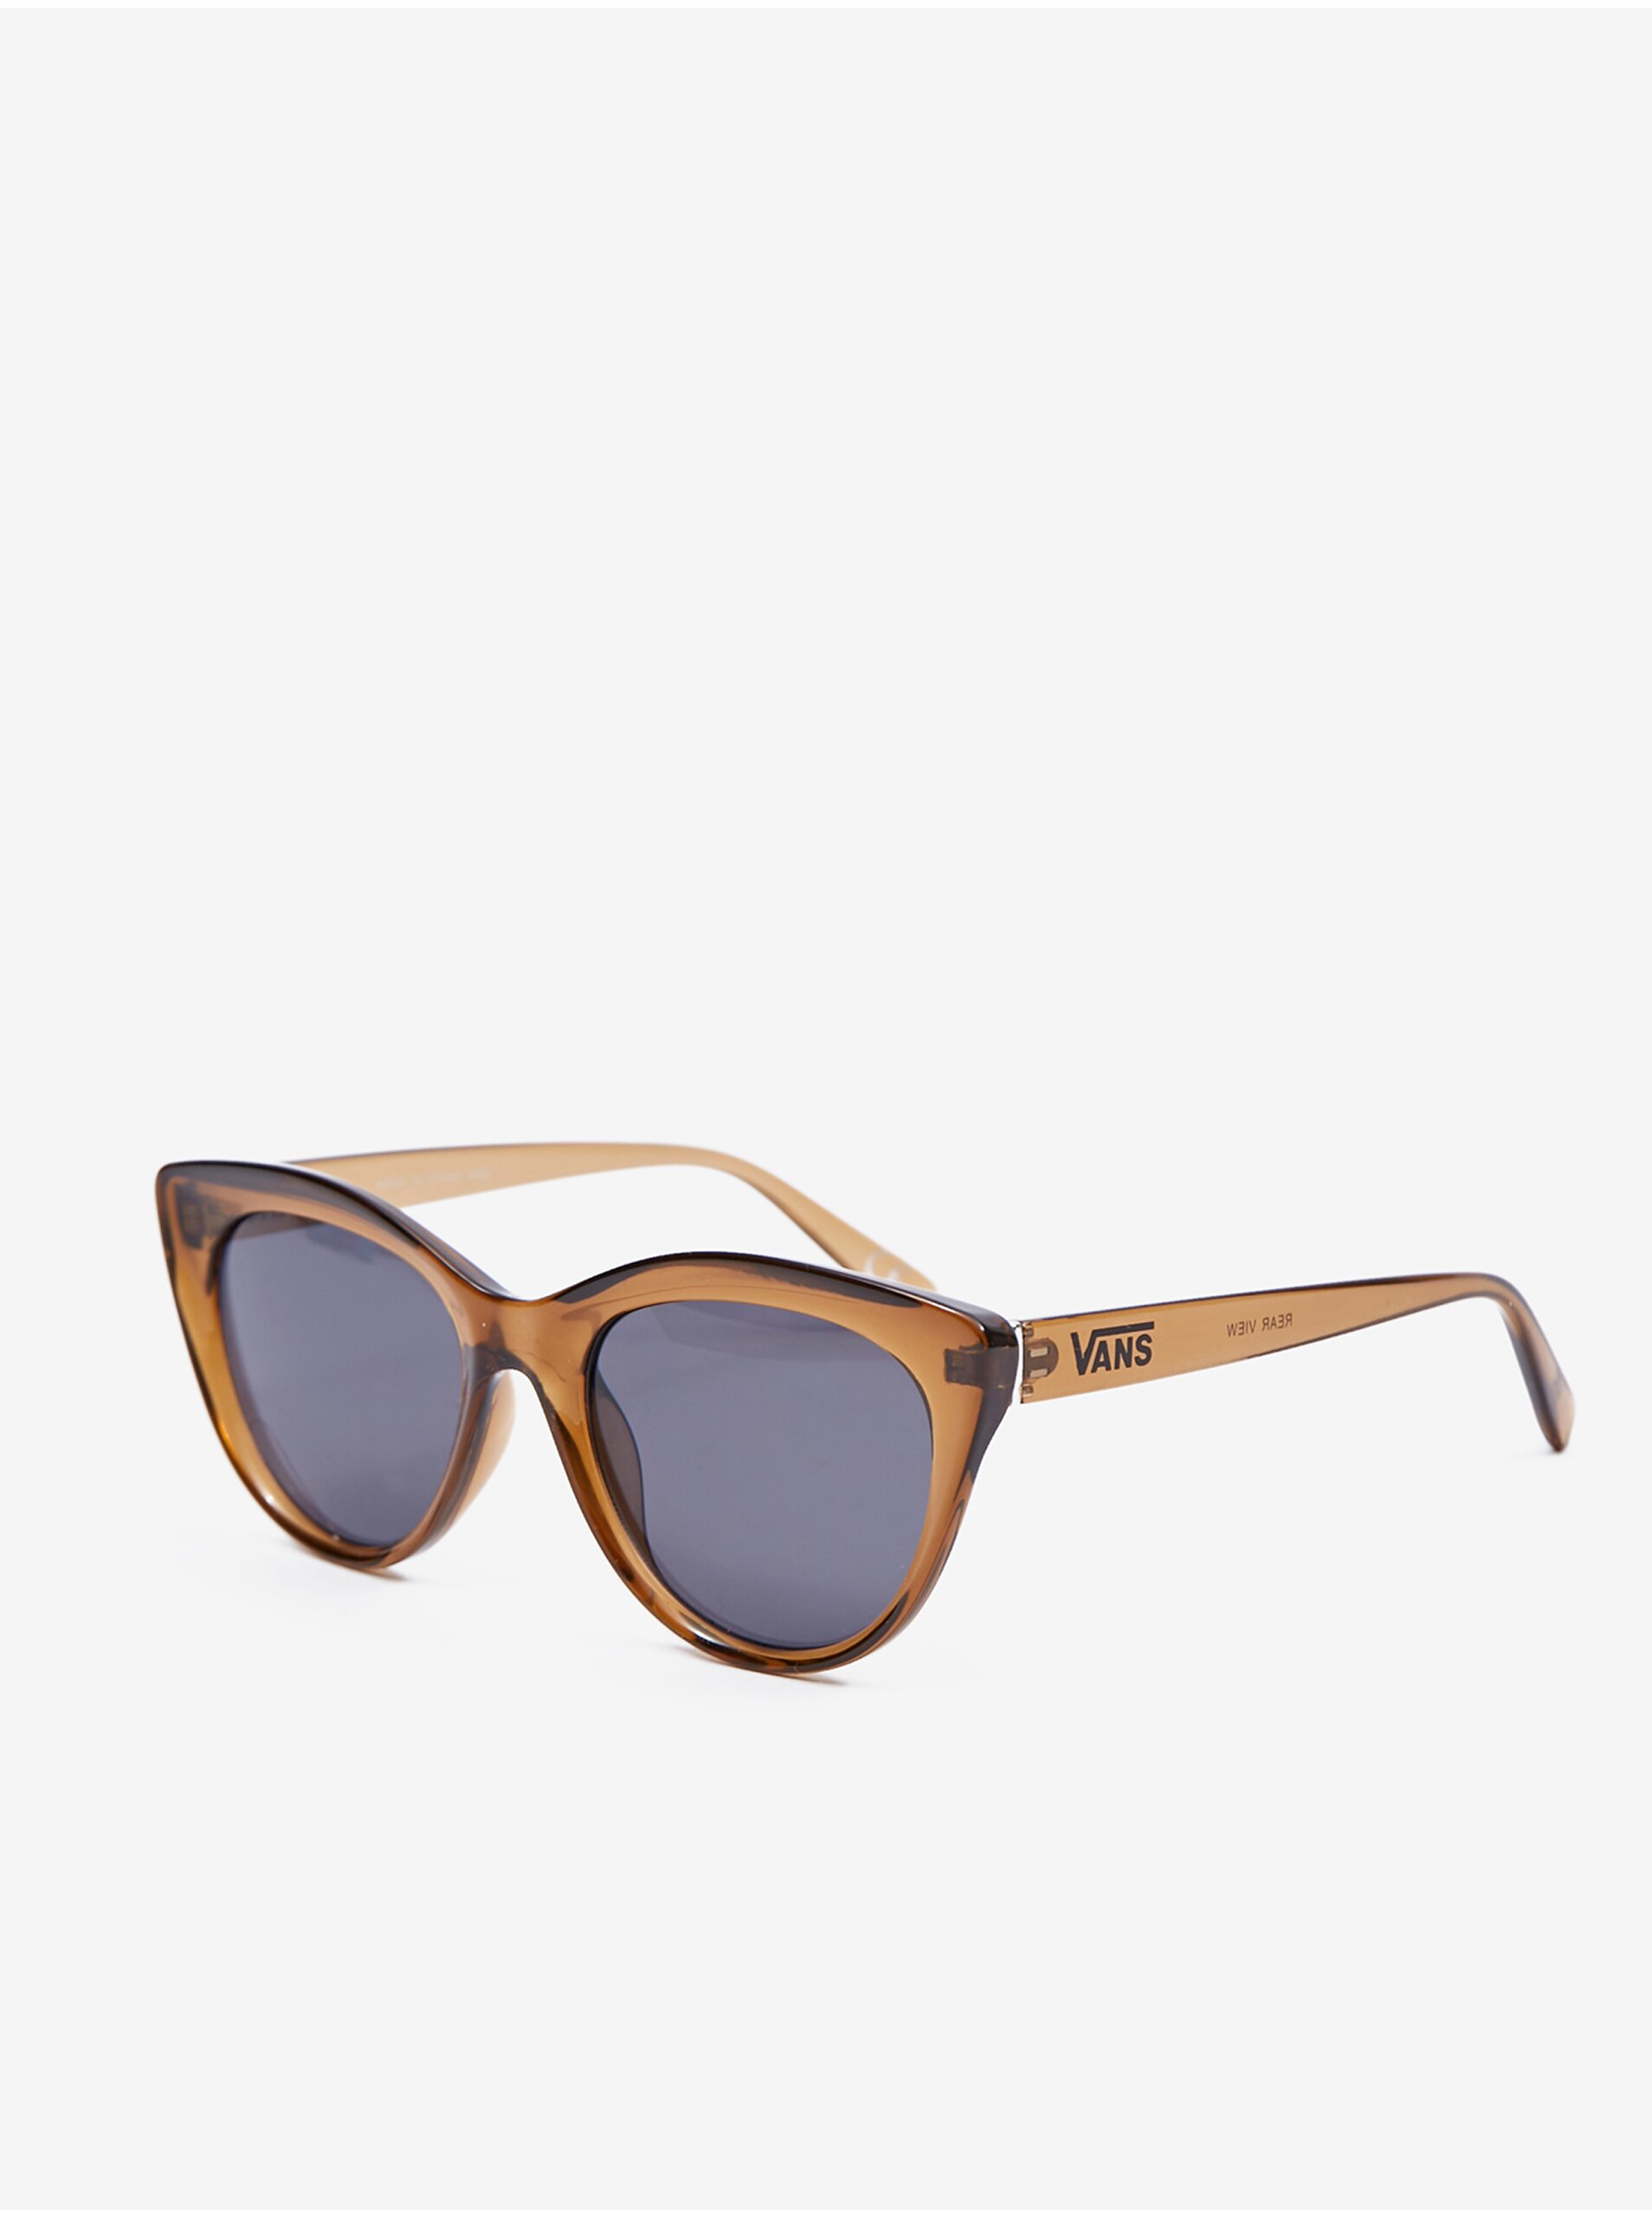 E-shop Hnědé dámské sluneční brýle VANS Rear View